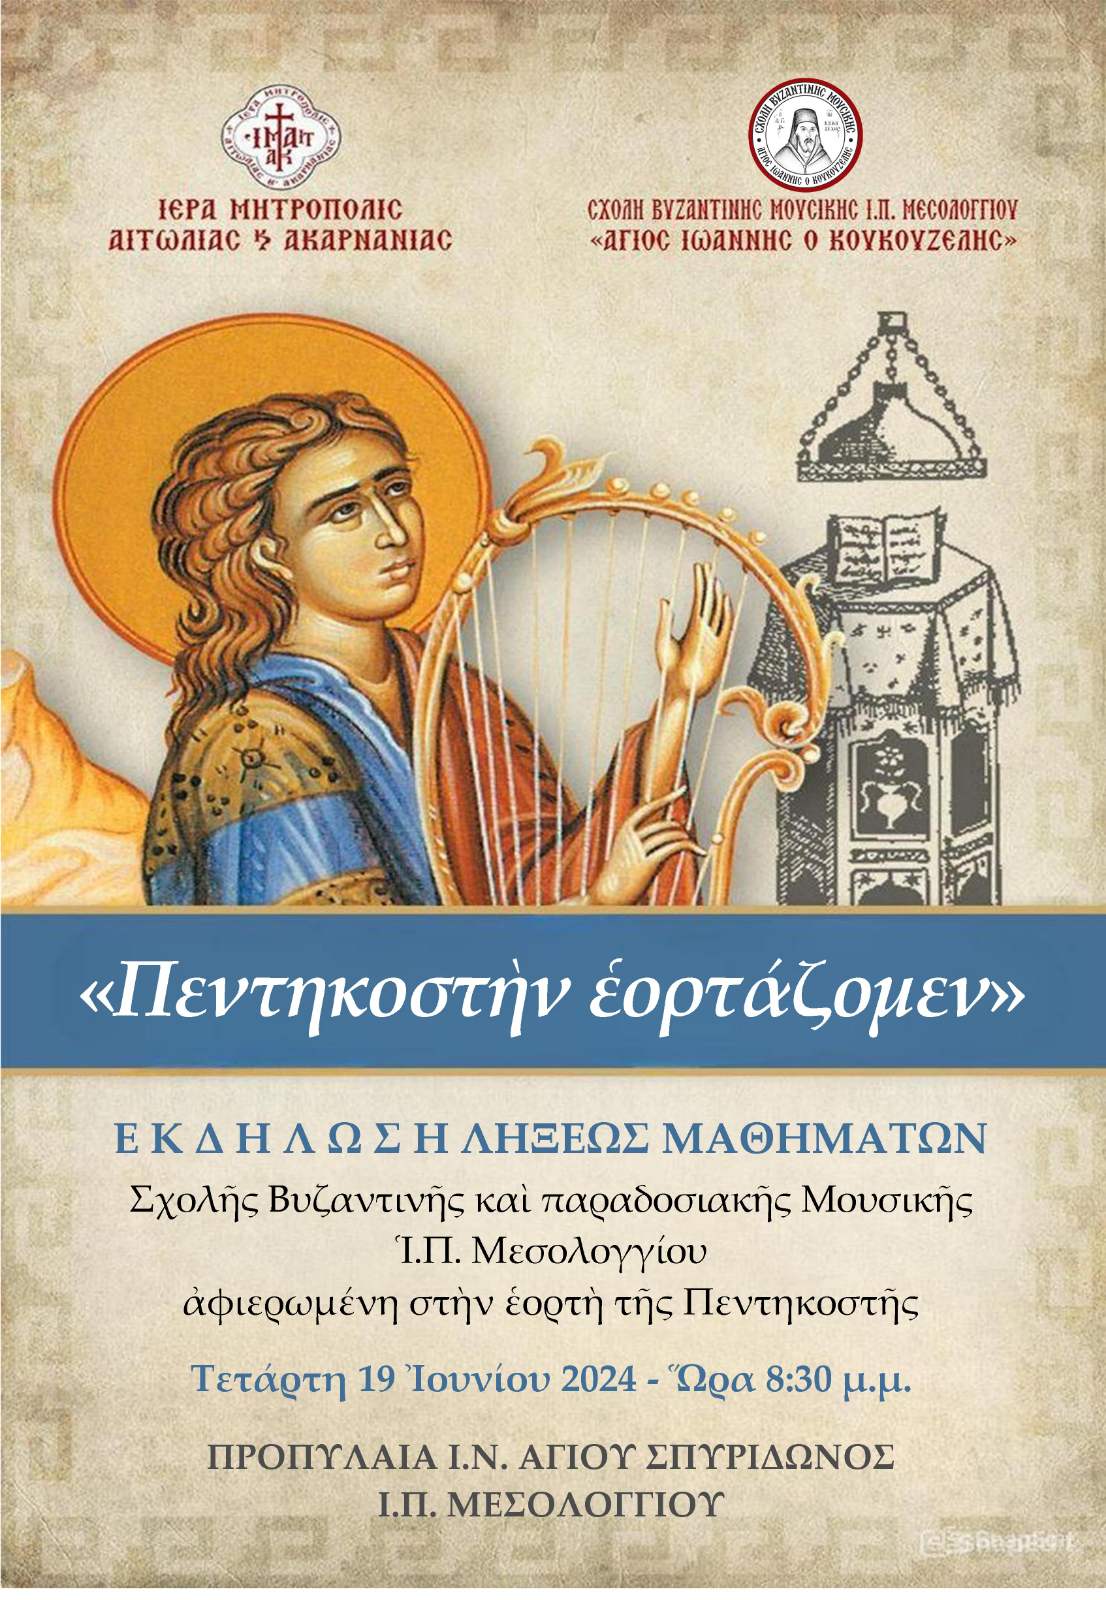 Μουσική Εκδήλωση της Σχολής Βυζαντινής Μουσικής Μεσολογγίου «Άγιος Ιωάννης ο Κουκουζέλης» της Ιεράς Μητροπόλεως Αιτωλίας και Ακαρνανίας